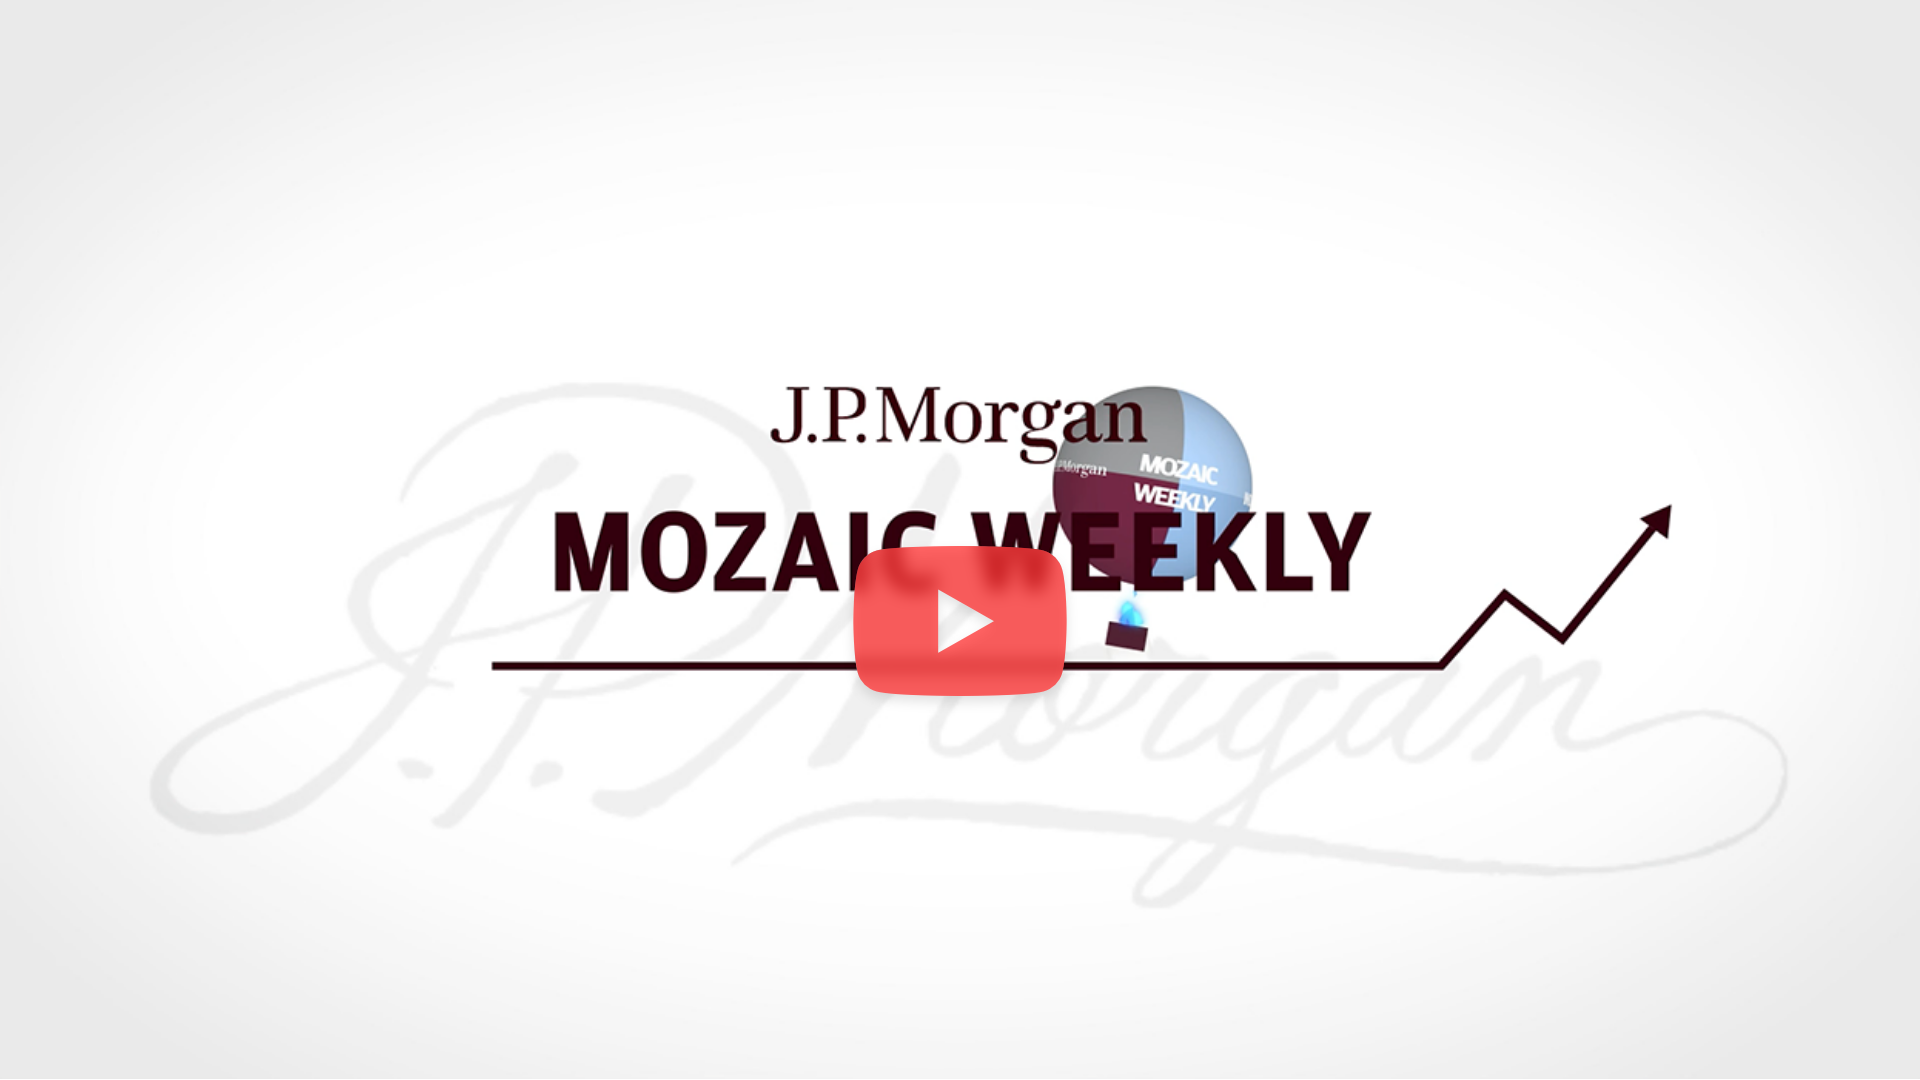 JP Morgan Mosaik Weekly Video